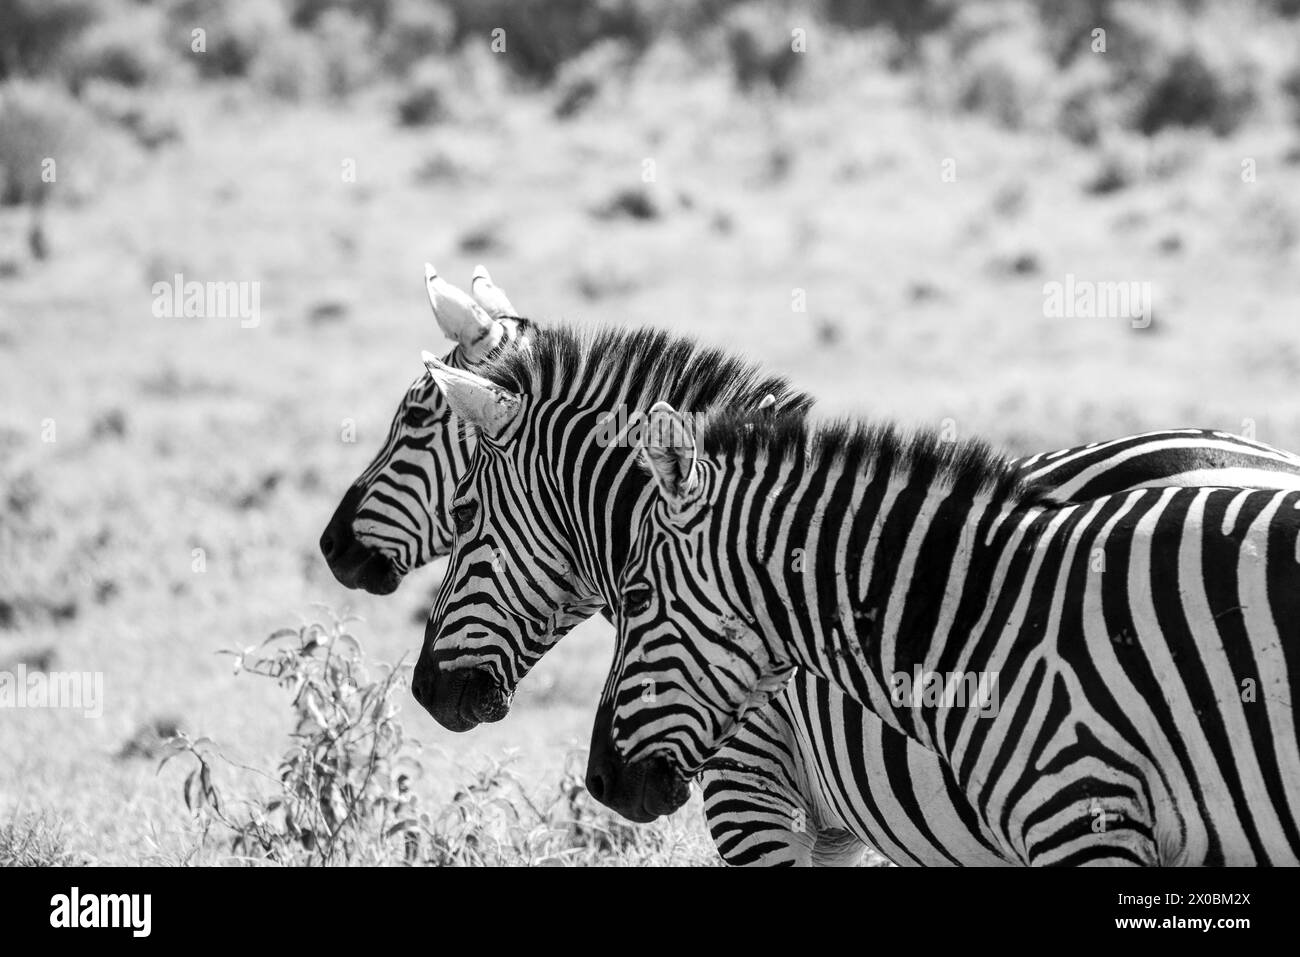 Kenya in the reserve of wildlife in kenya Stock Photo